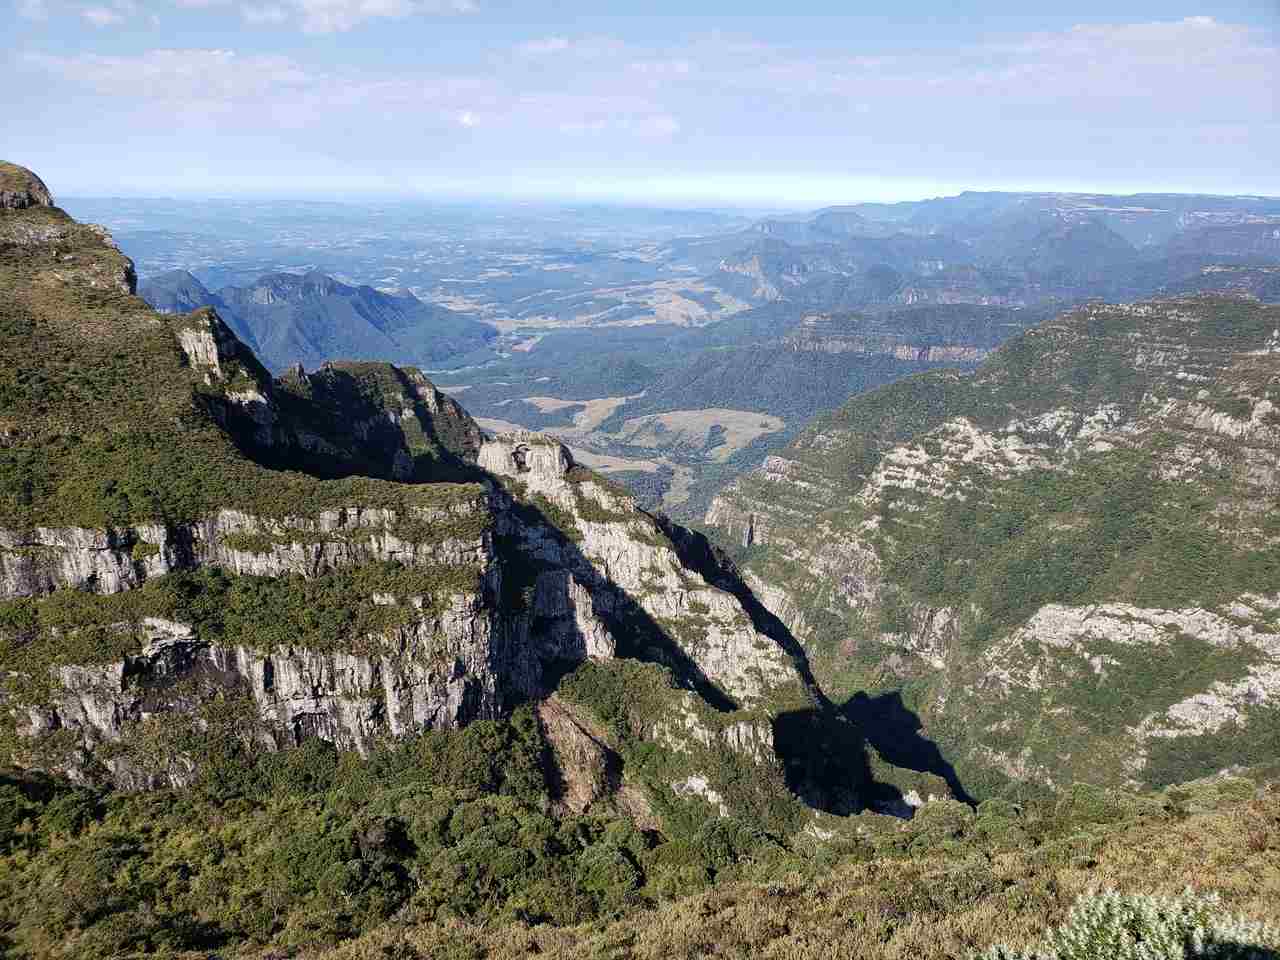 Serra catarinense - Morro da Igreja e Pedra Furada